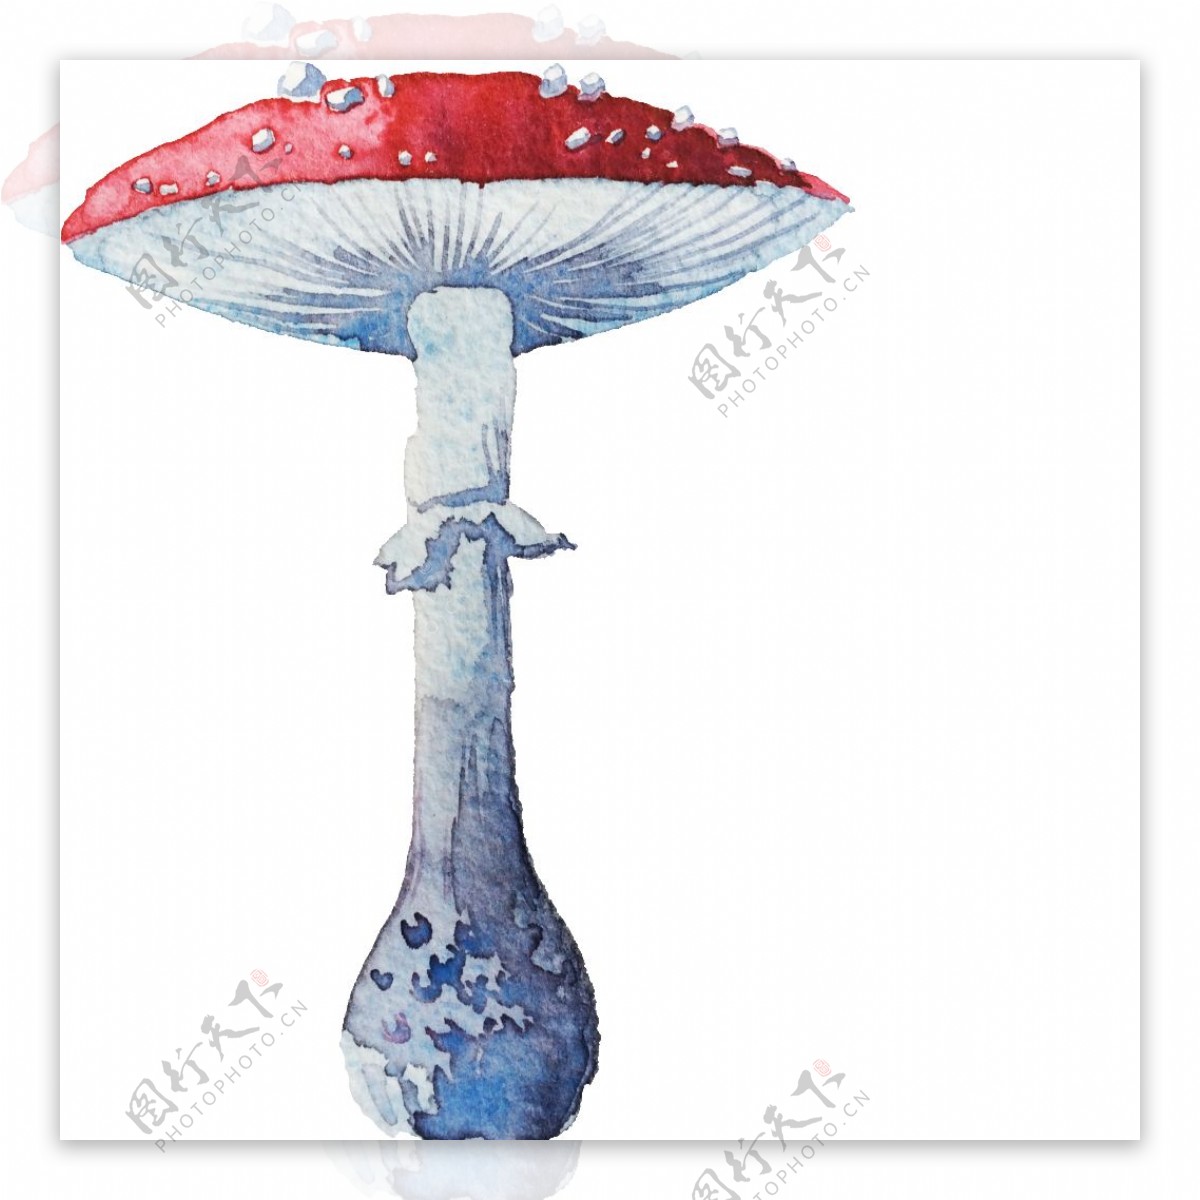 彩绘蘑菇高清素材唯美